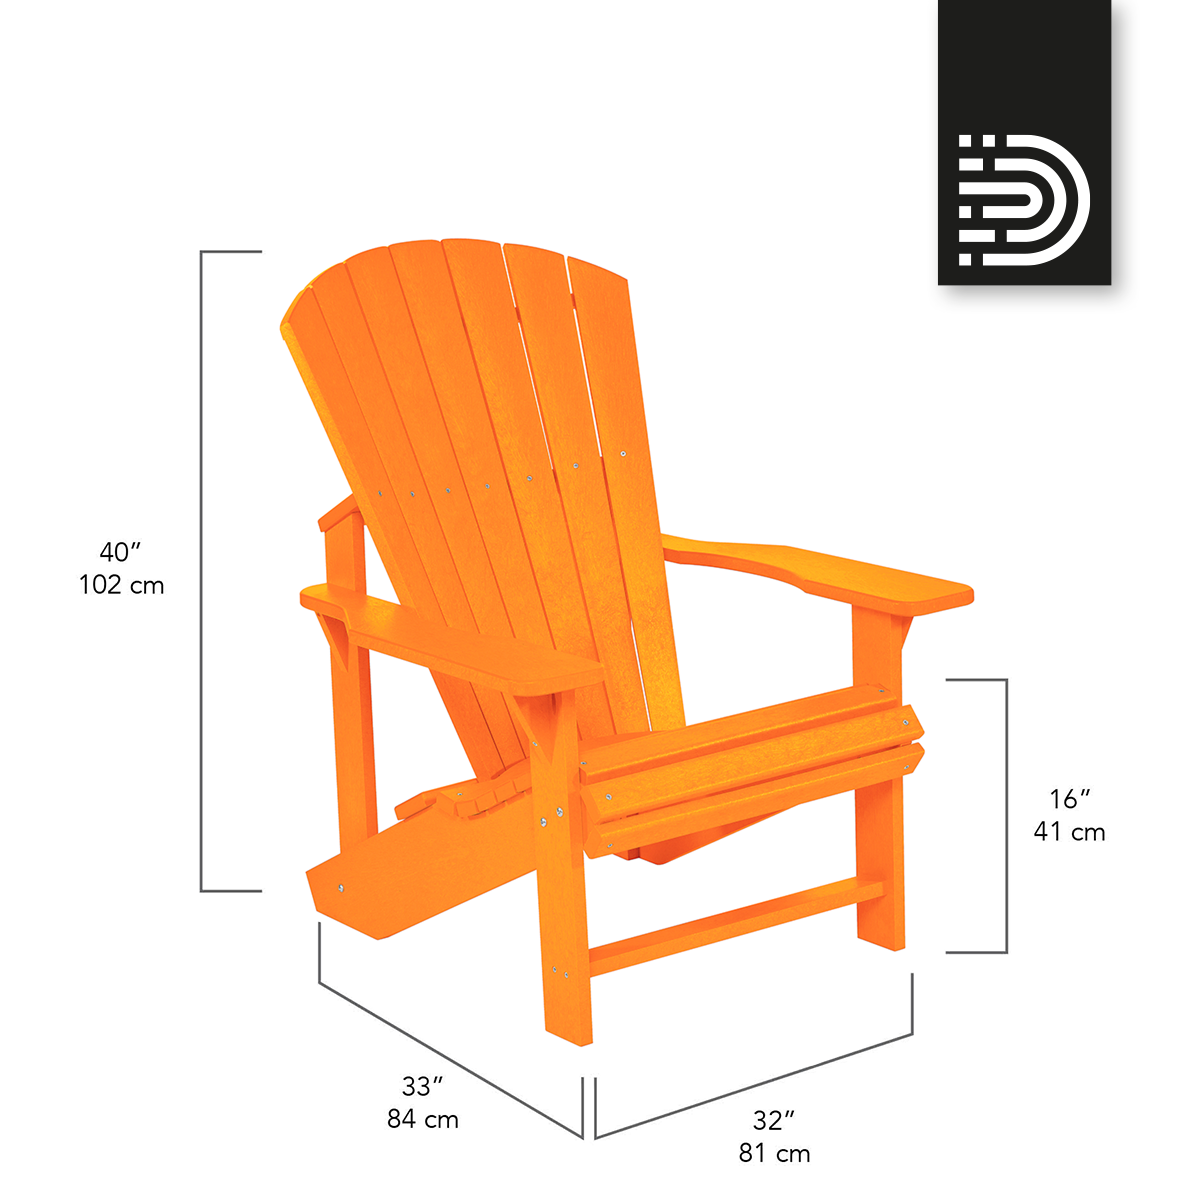  C01 Classic Adirondack Chair - orange 13